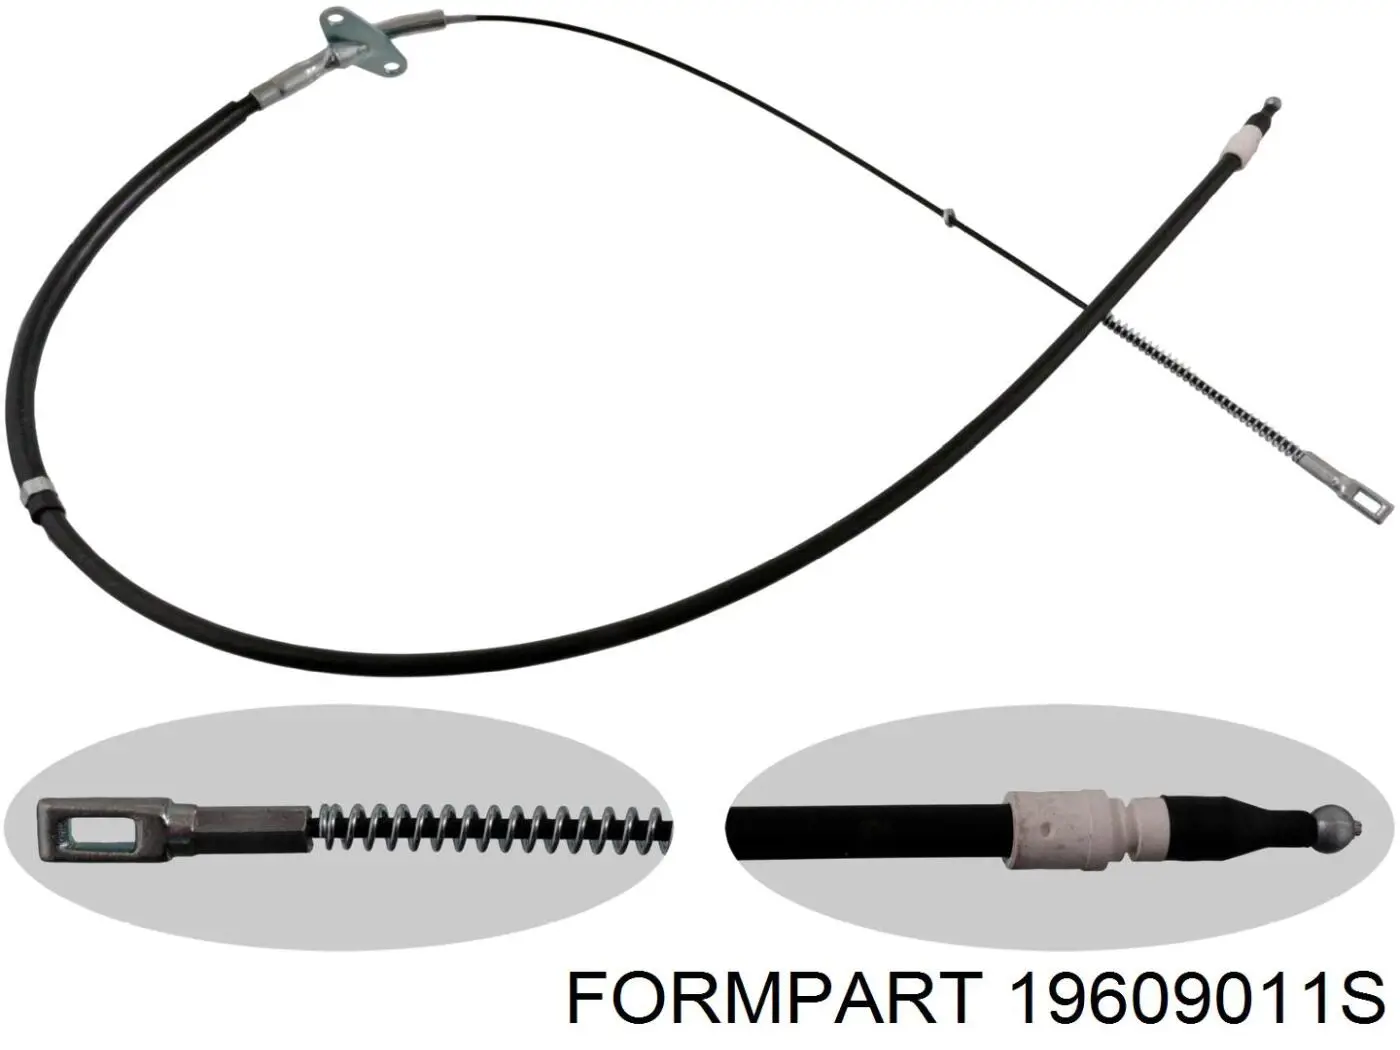 19609011S Formpart/Otoform трос ручного тормоза задний правый